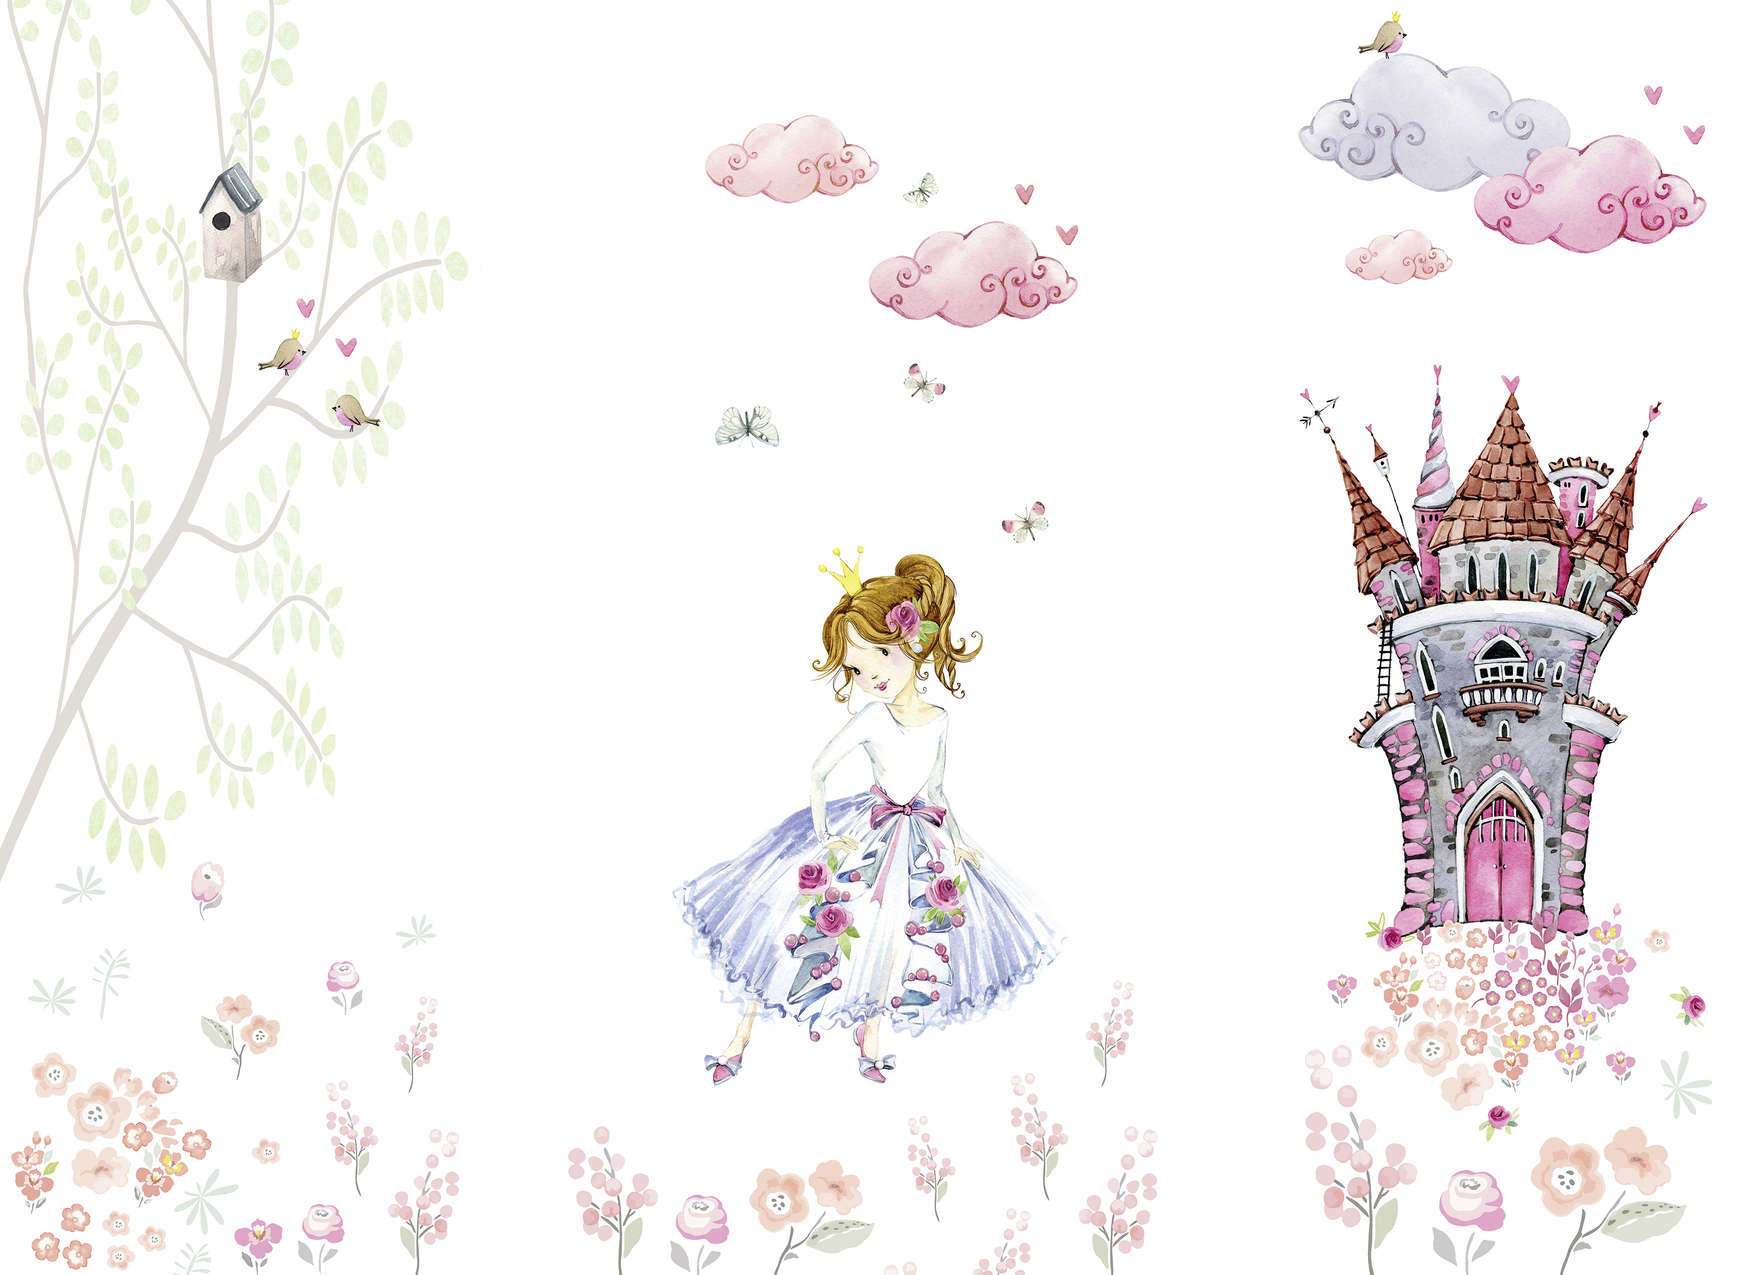             Papel pintado para la habitación de los niños "Princesa en el jardín del castillo" - rosa, blanco, verde
        